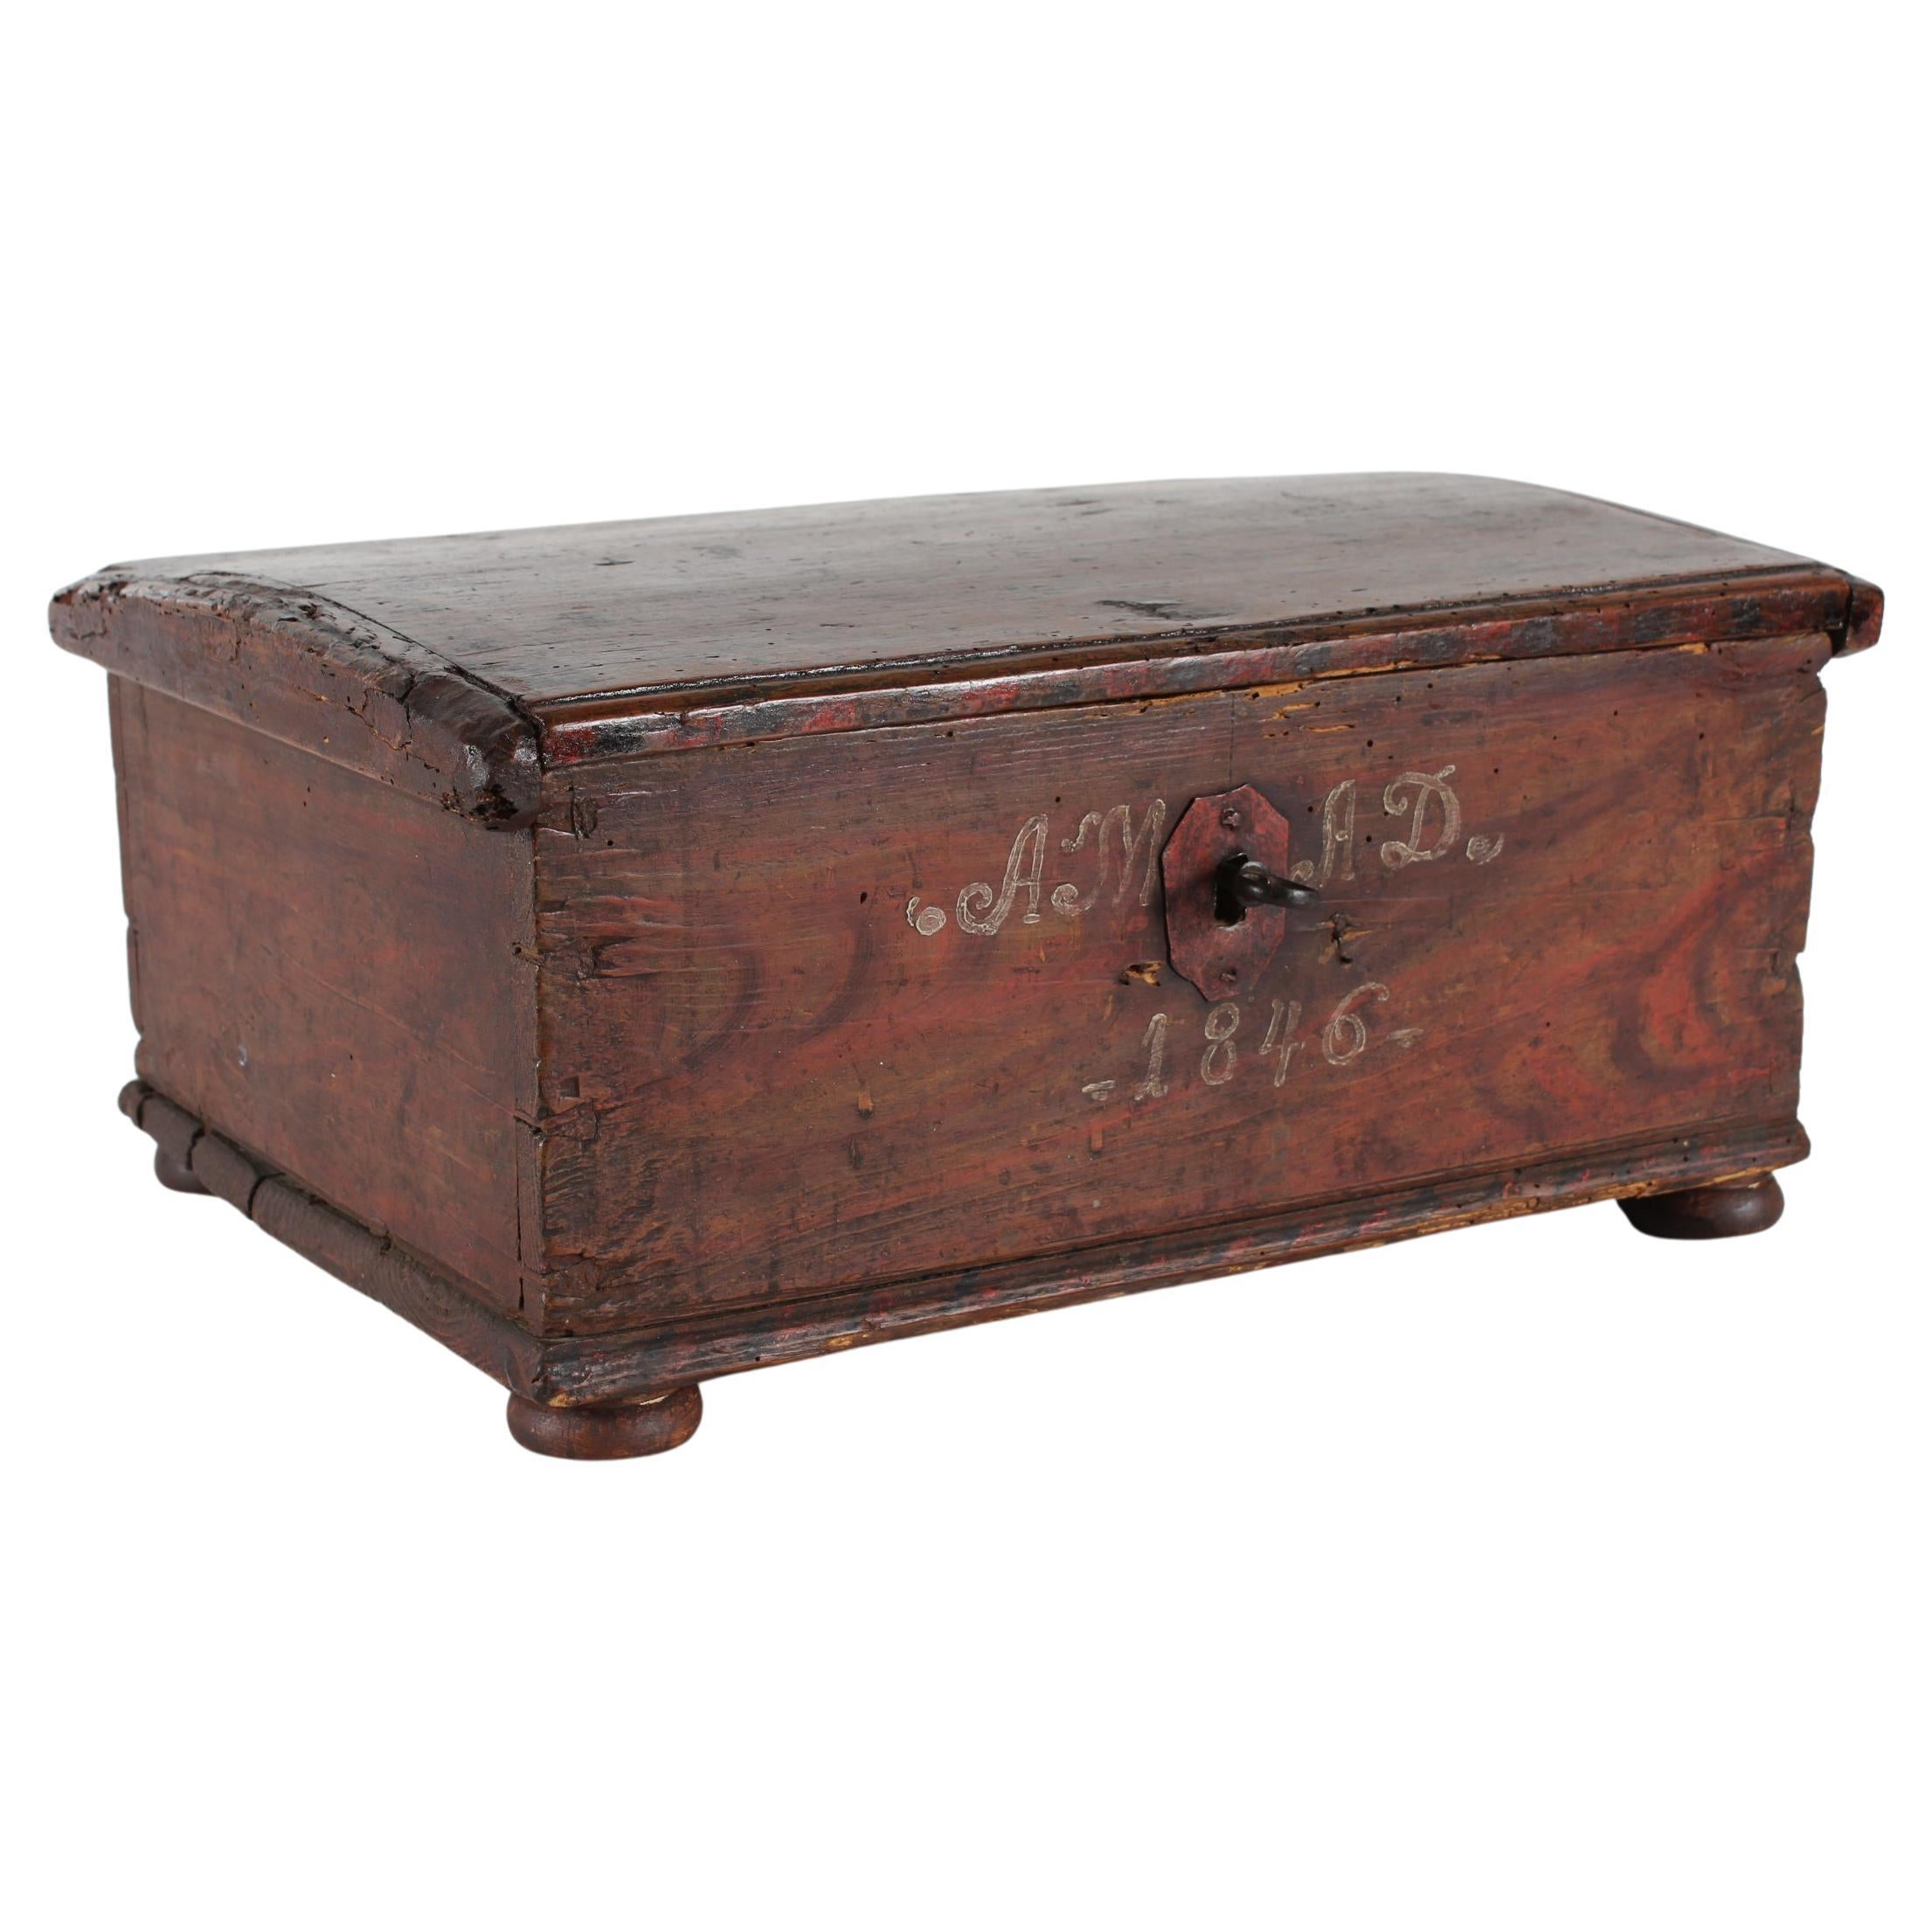 Boîte de coffret scandinave ancienne en bois peinte à la main, cadeau d'amour daté de 1846